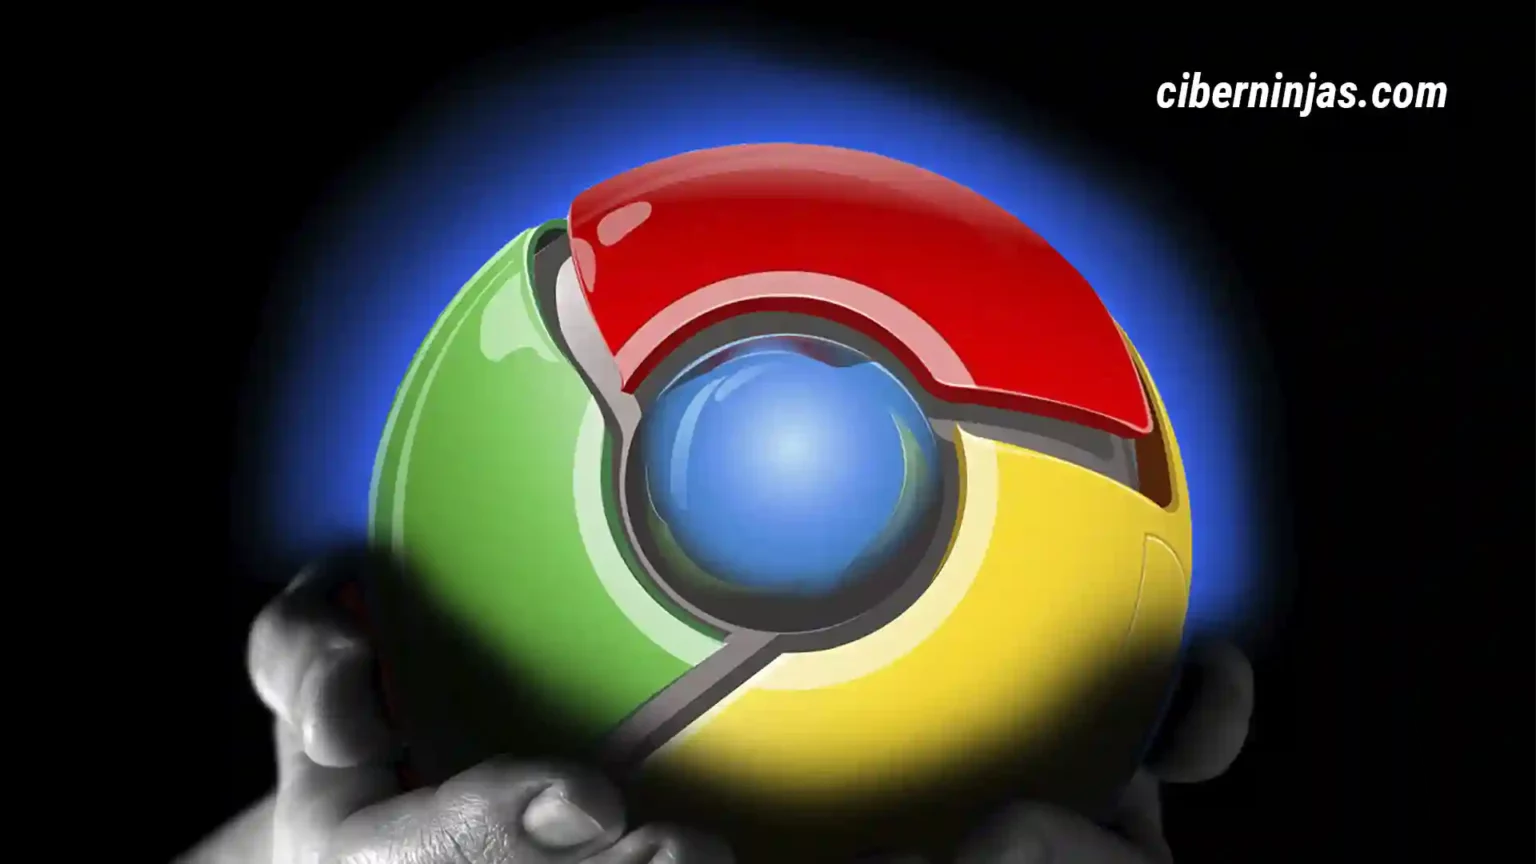 Extensiones maliciosas permiten a piratas controlar Google Chrome de forma remota